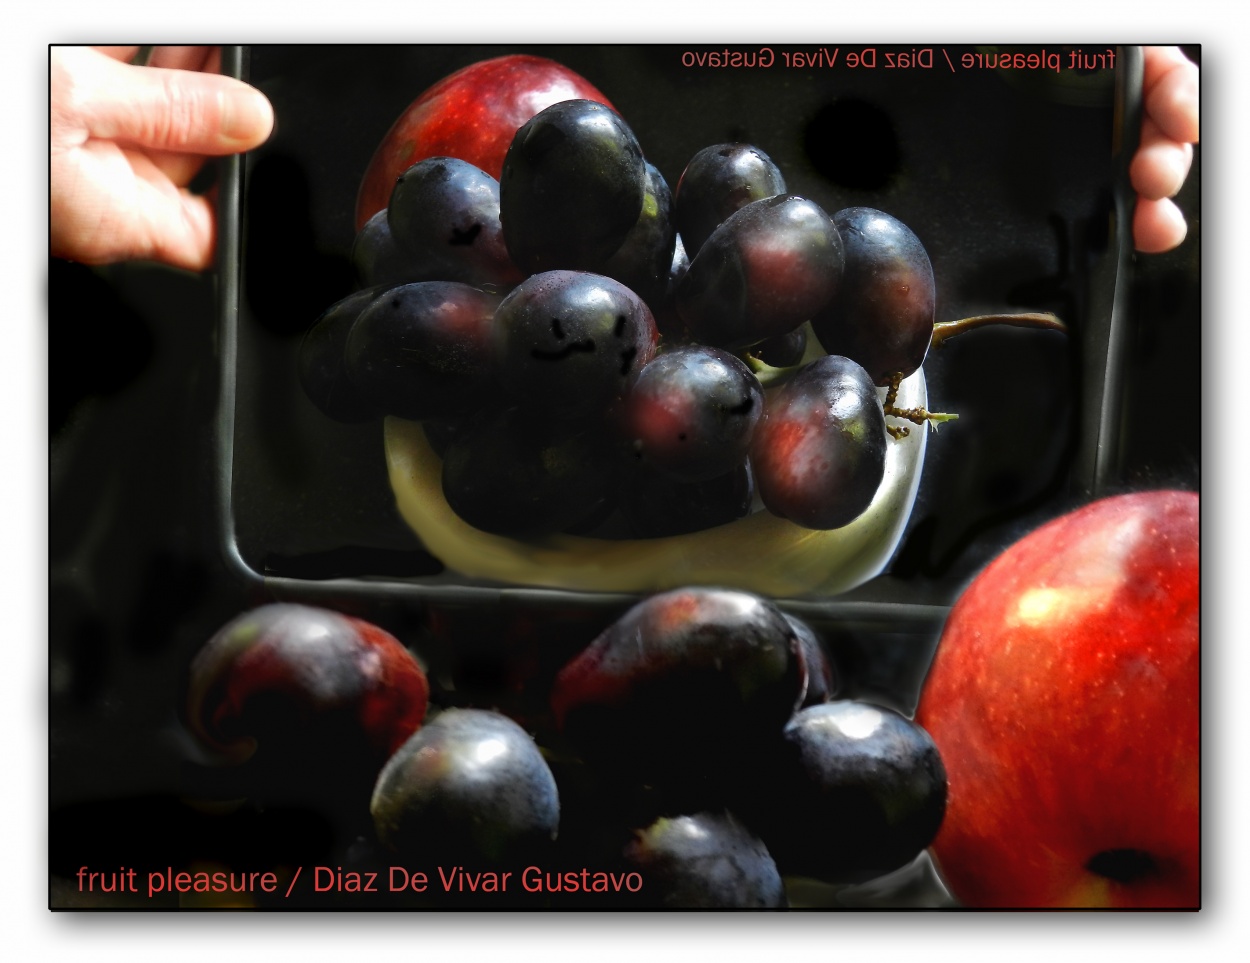 "Fruit pleasure - Diaz De Vivar Gustavo" de Gustavo Diaz de Vivar